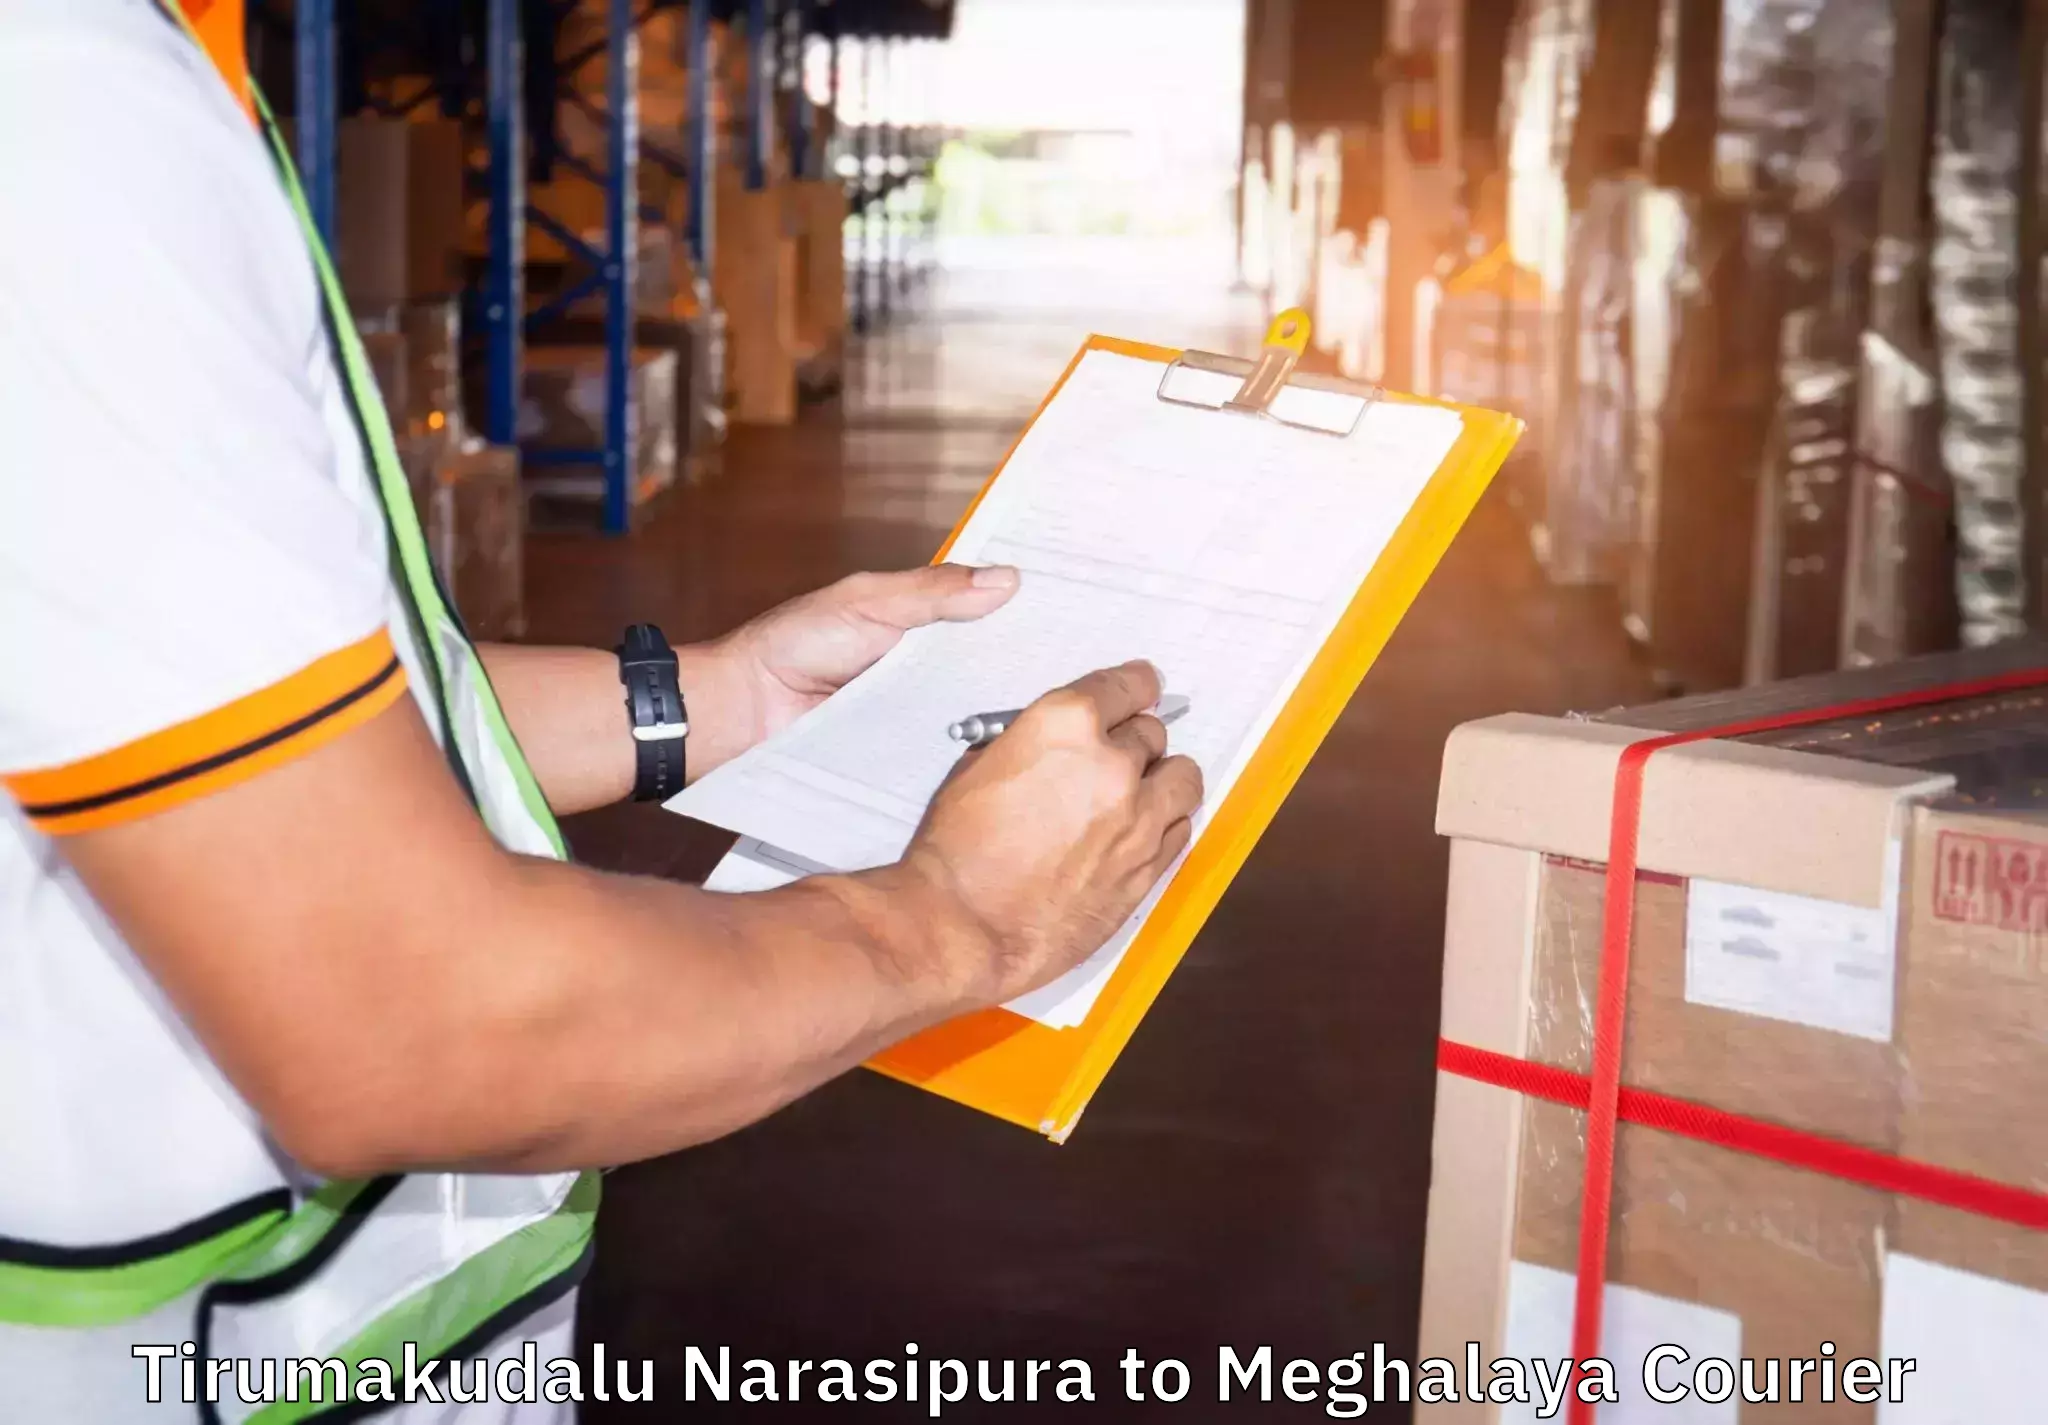 Efficient furniture transport in Tirumakudalu Narasipura to Nongpoh